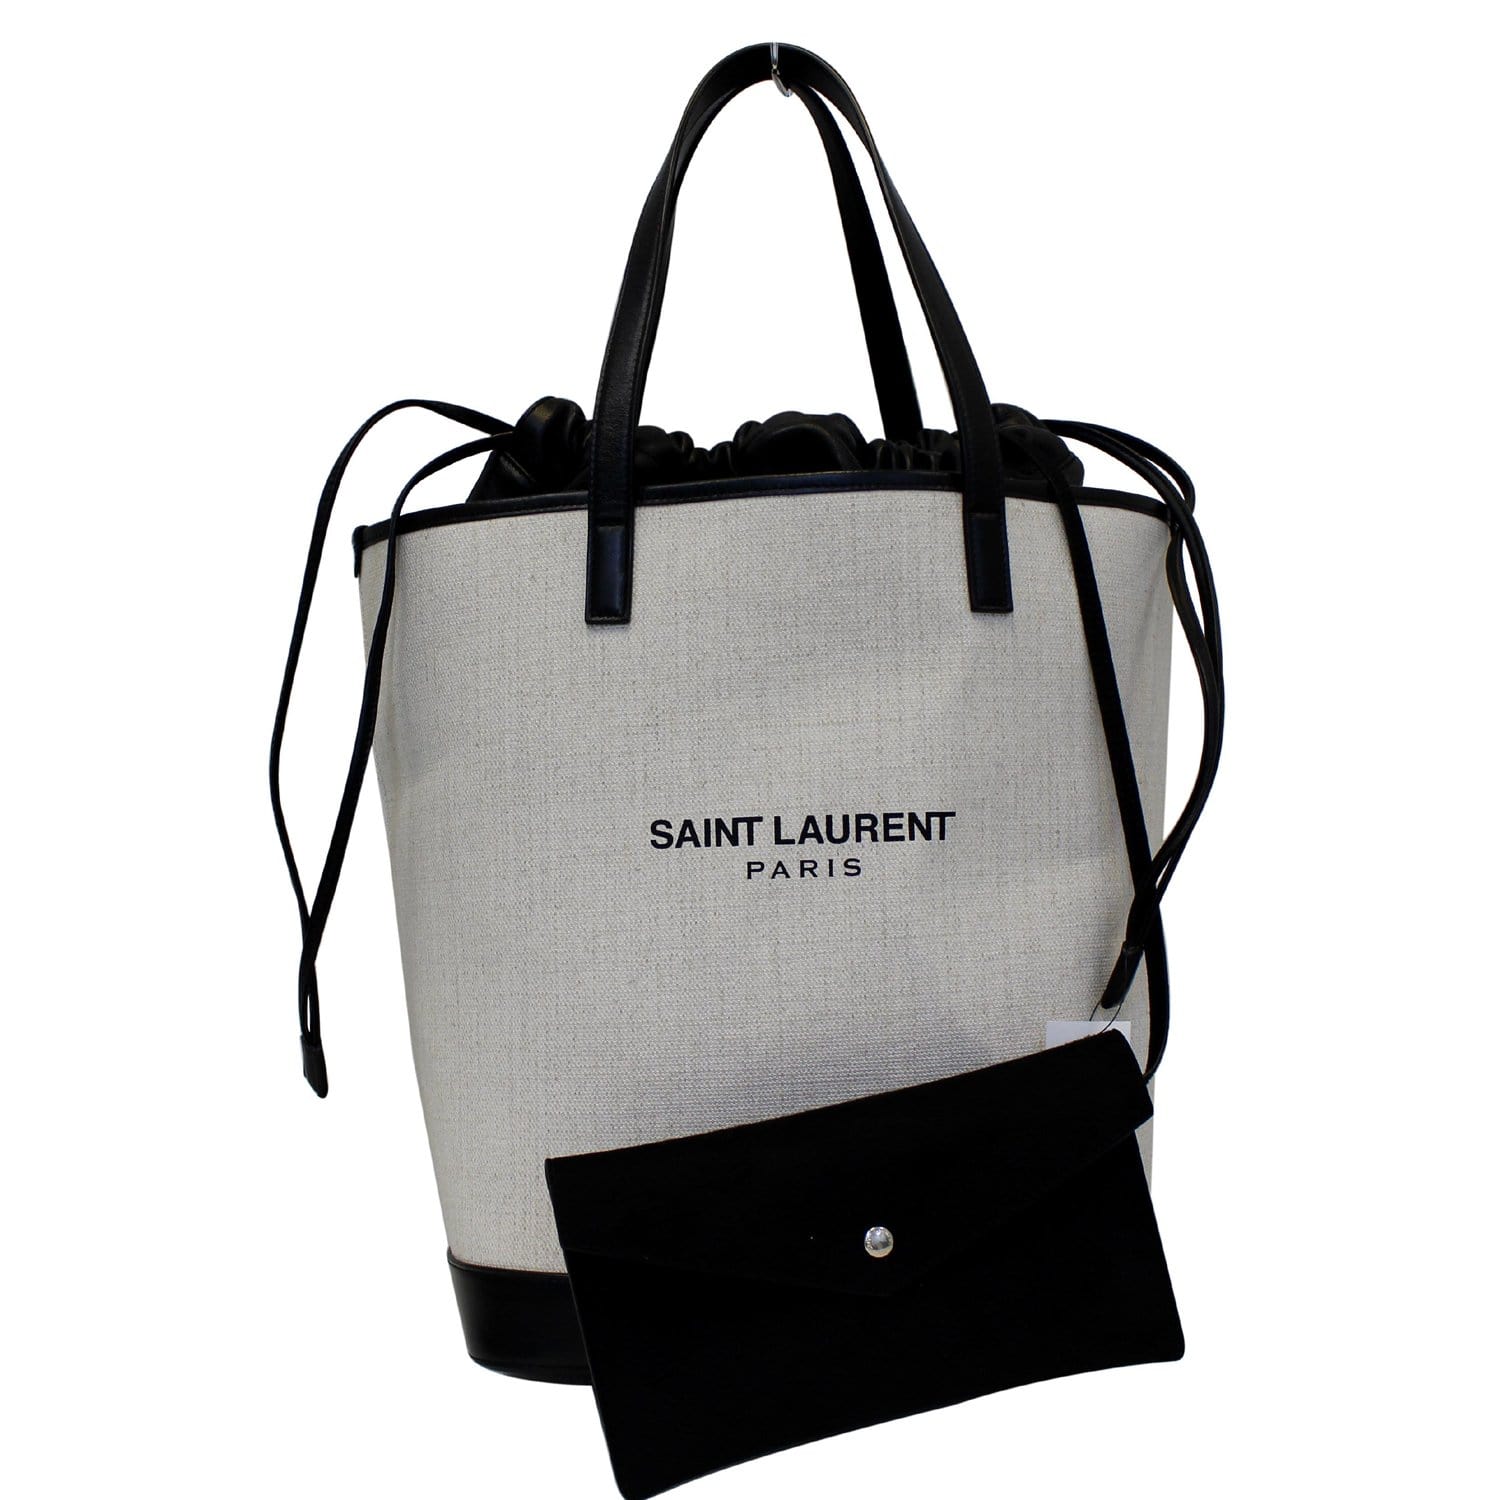 SAINT LAURENT PARIS Tote Bag 551595 Teddy tote canvas/leather/Black Women